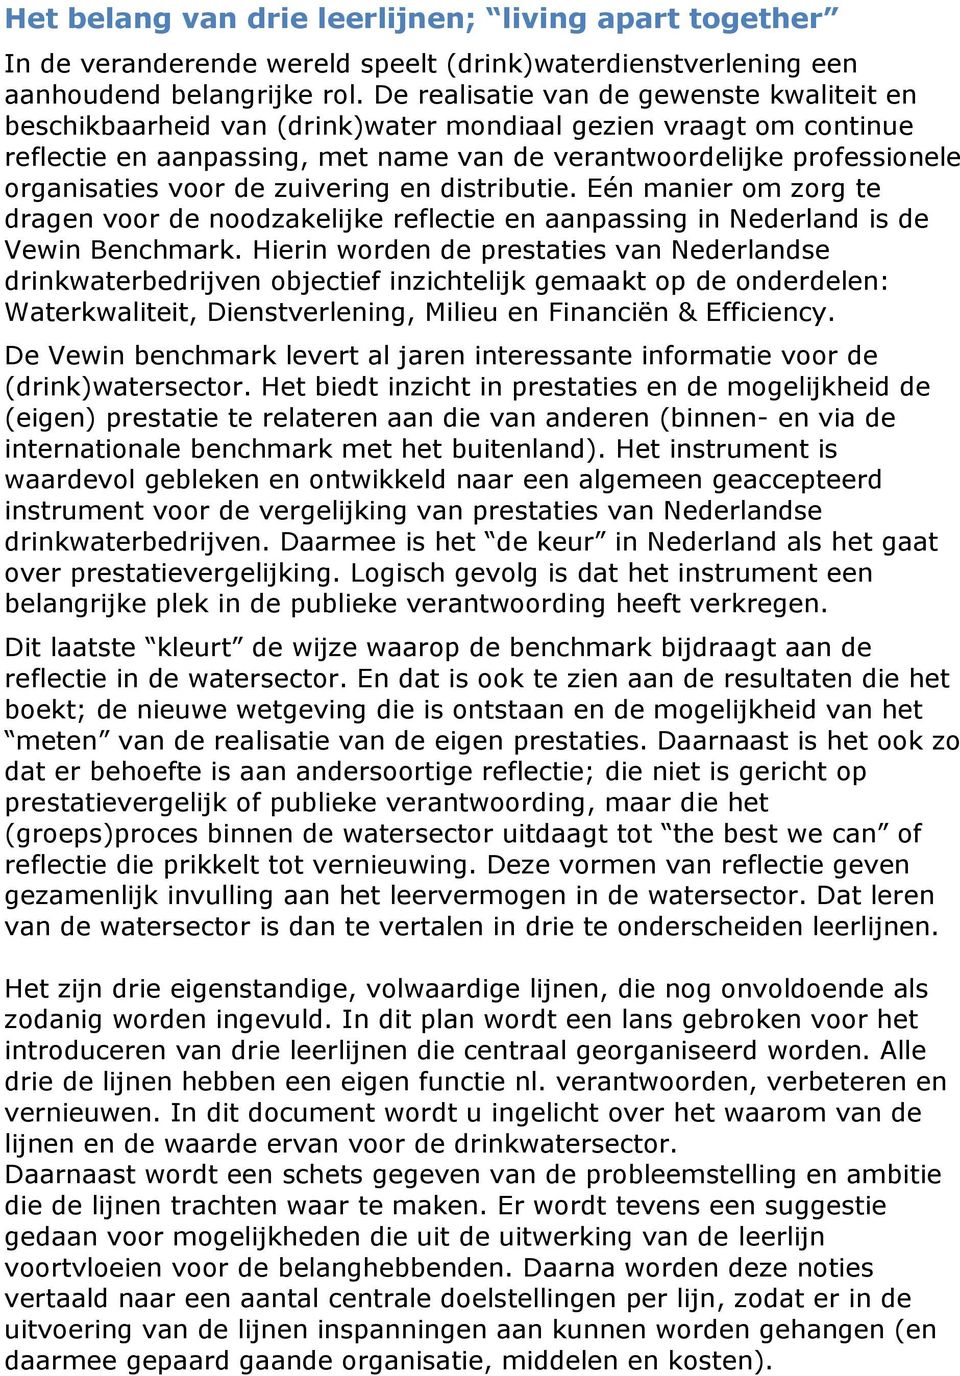 voor de zuivering en distributie. Eén manier om zorg te dragen voor de noodzakelijke reflectie en aanpassing in Nederland is de Vewin Benchmark.